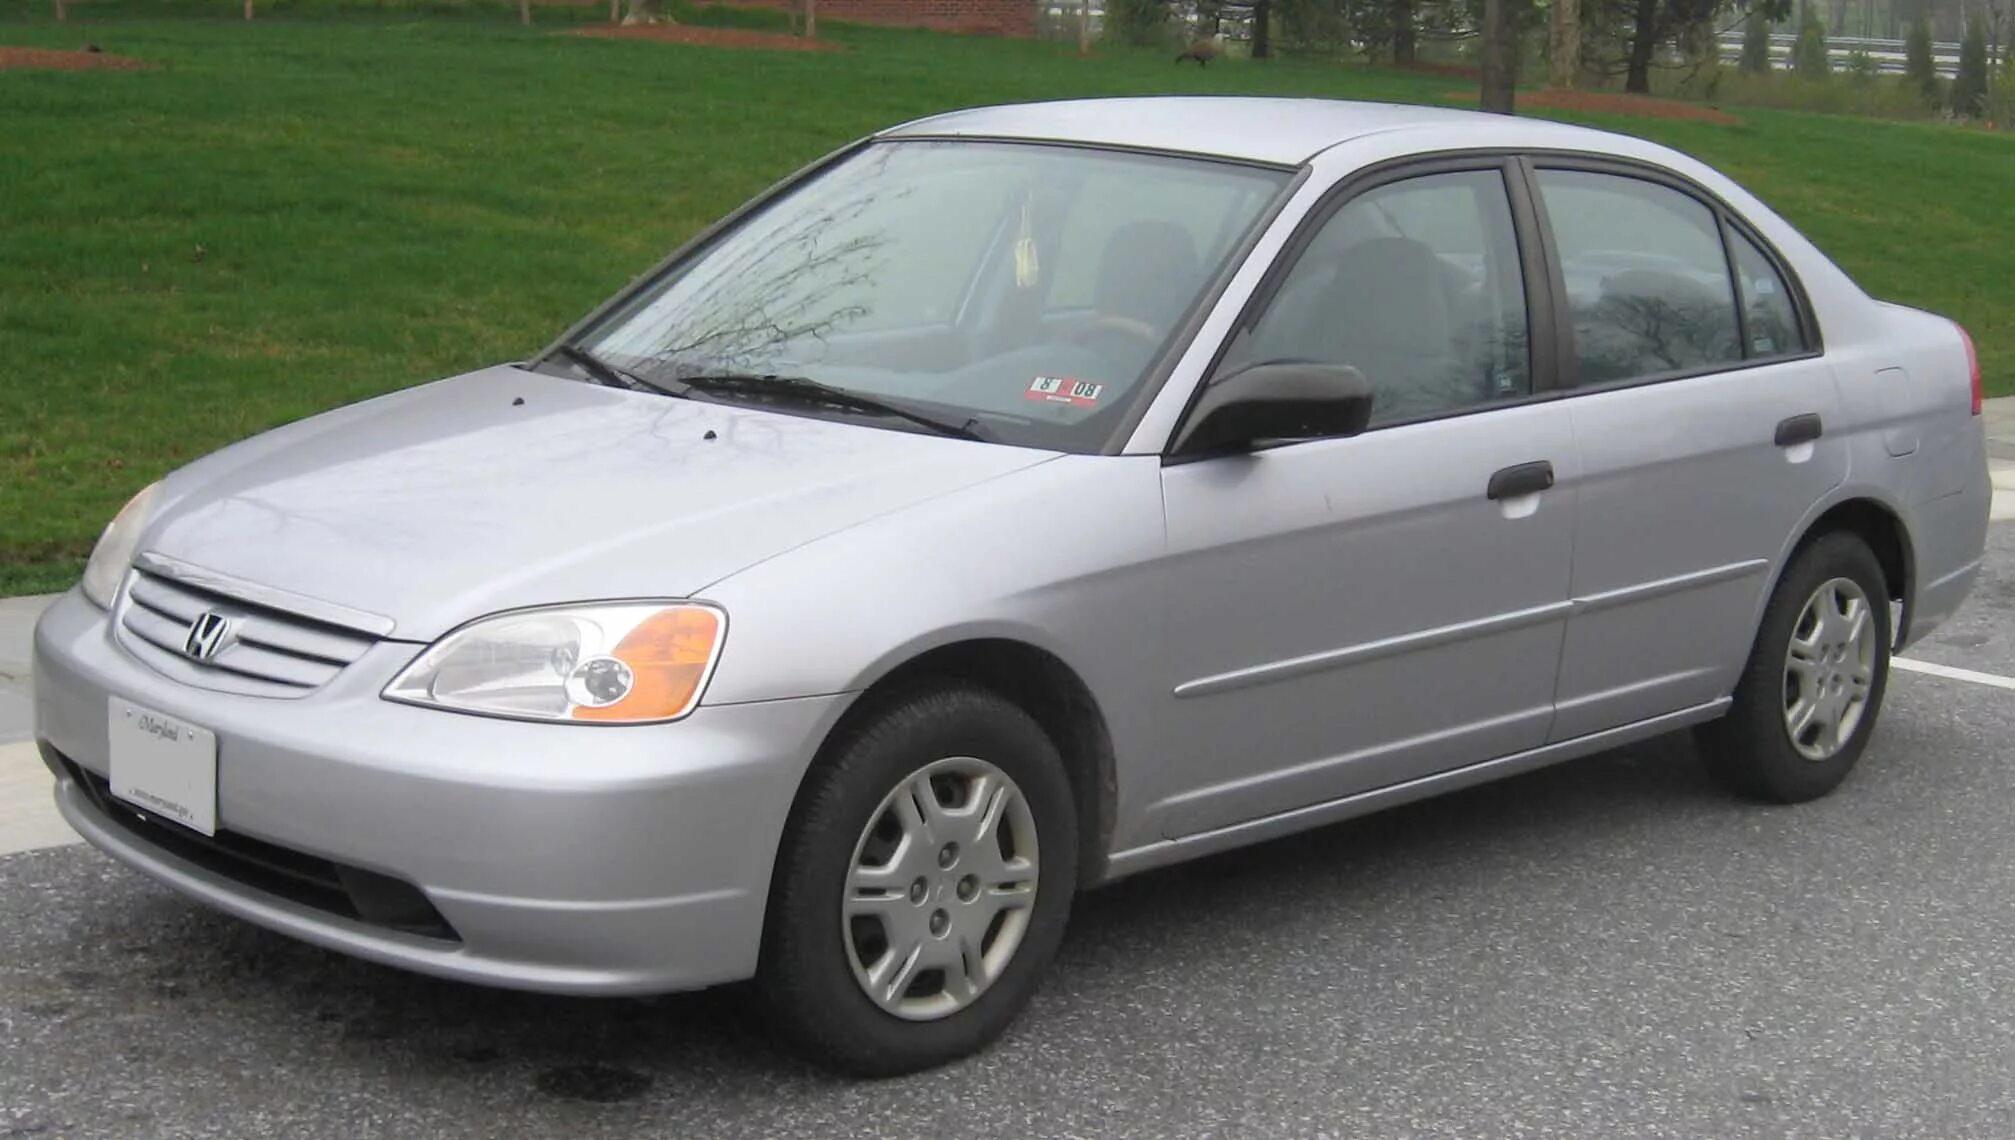 Купить хонда цивик 7. Honda Civic 2001-2003. Honda Civic 7 2001. Honda Civic 2003. Honda Civic 2001 седан.